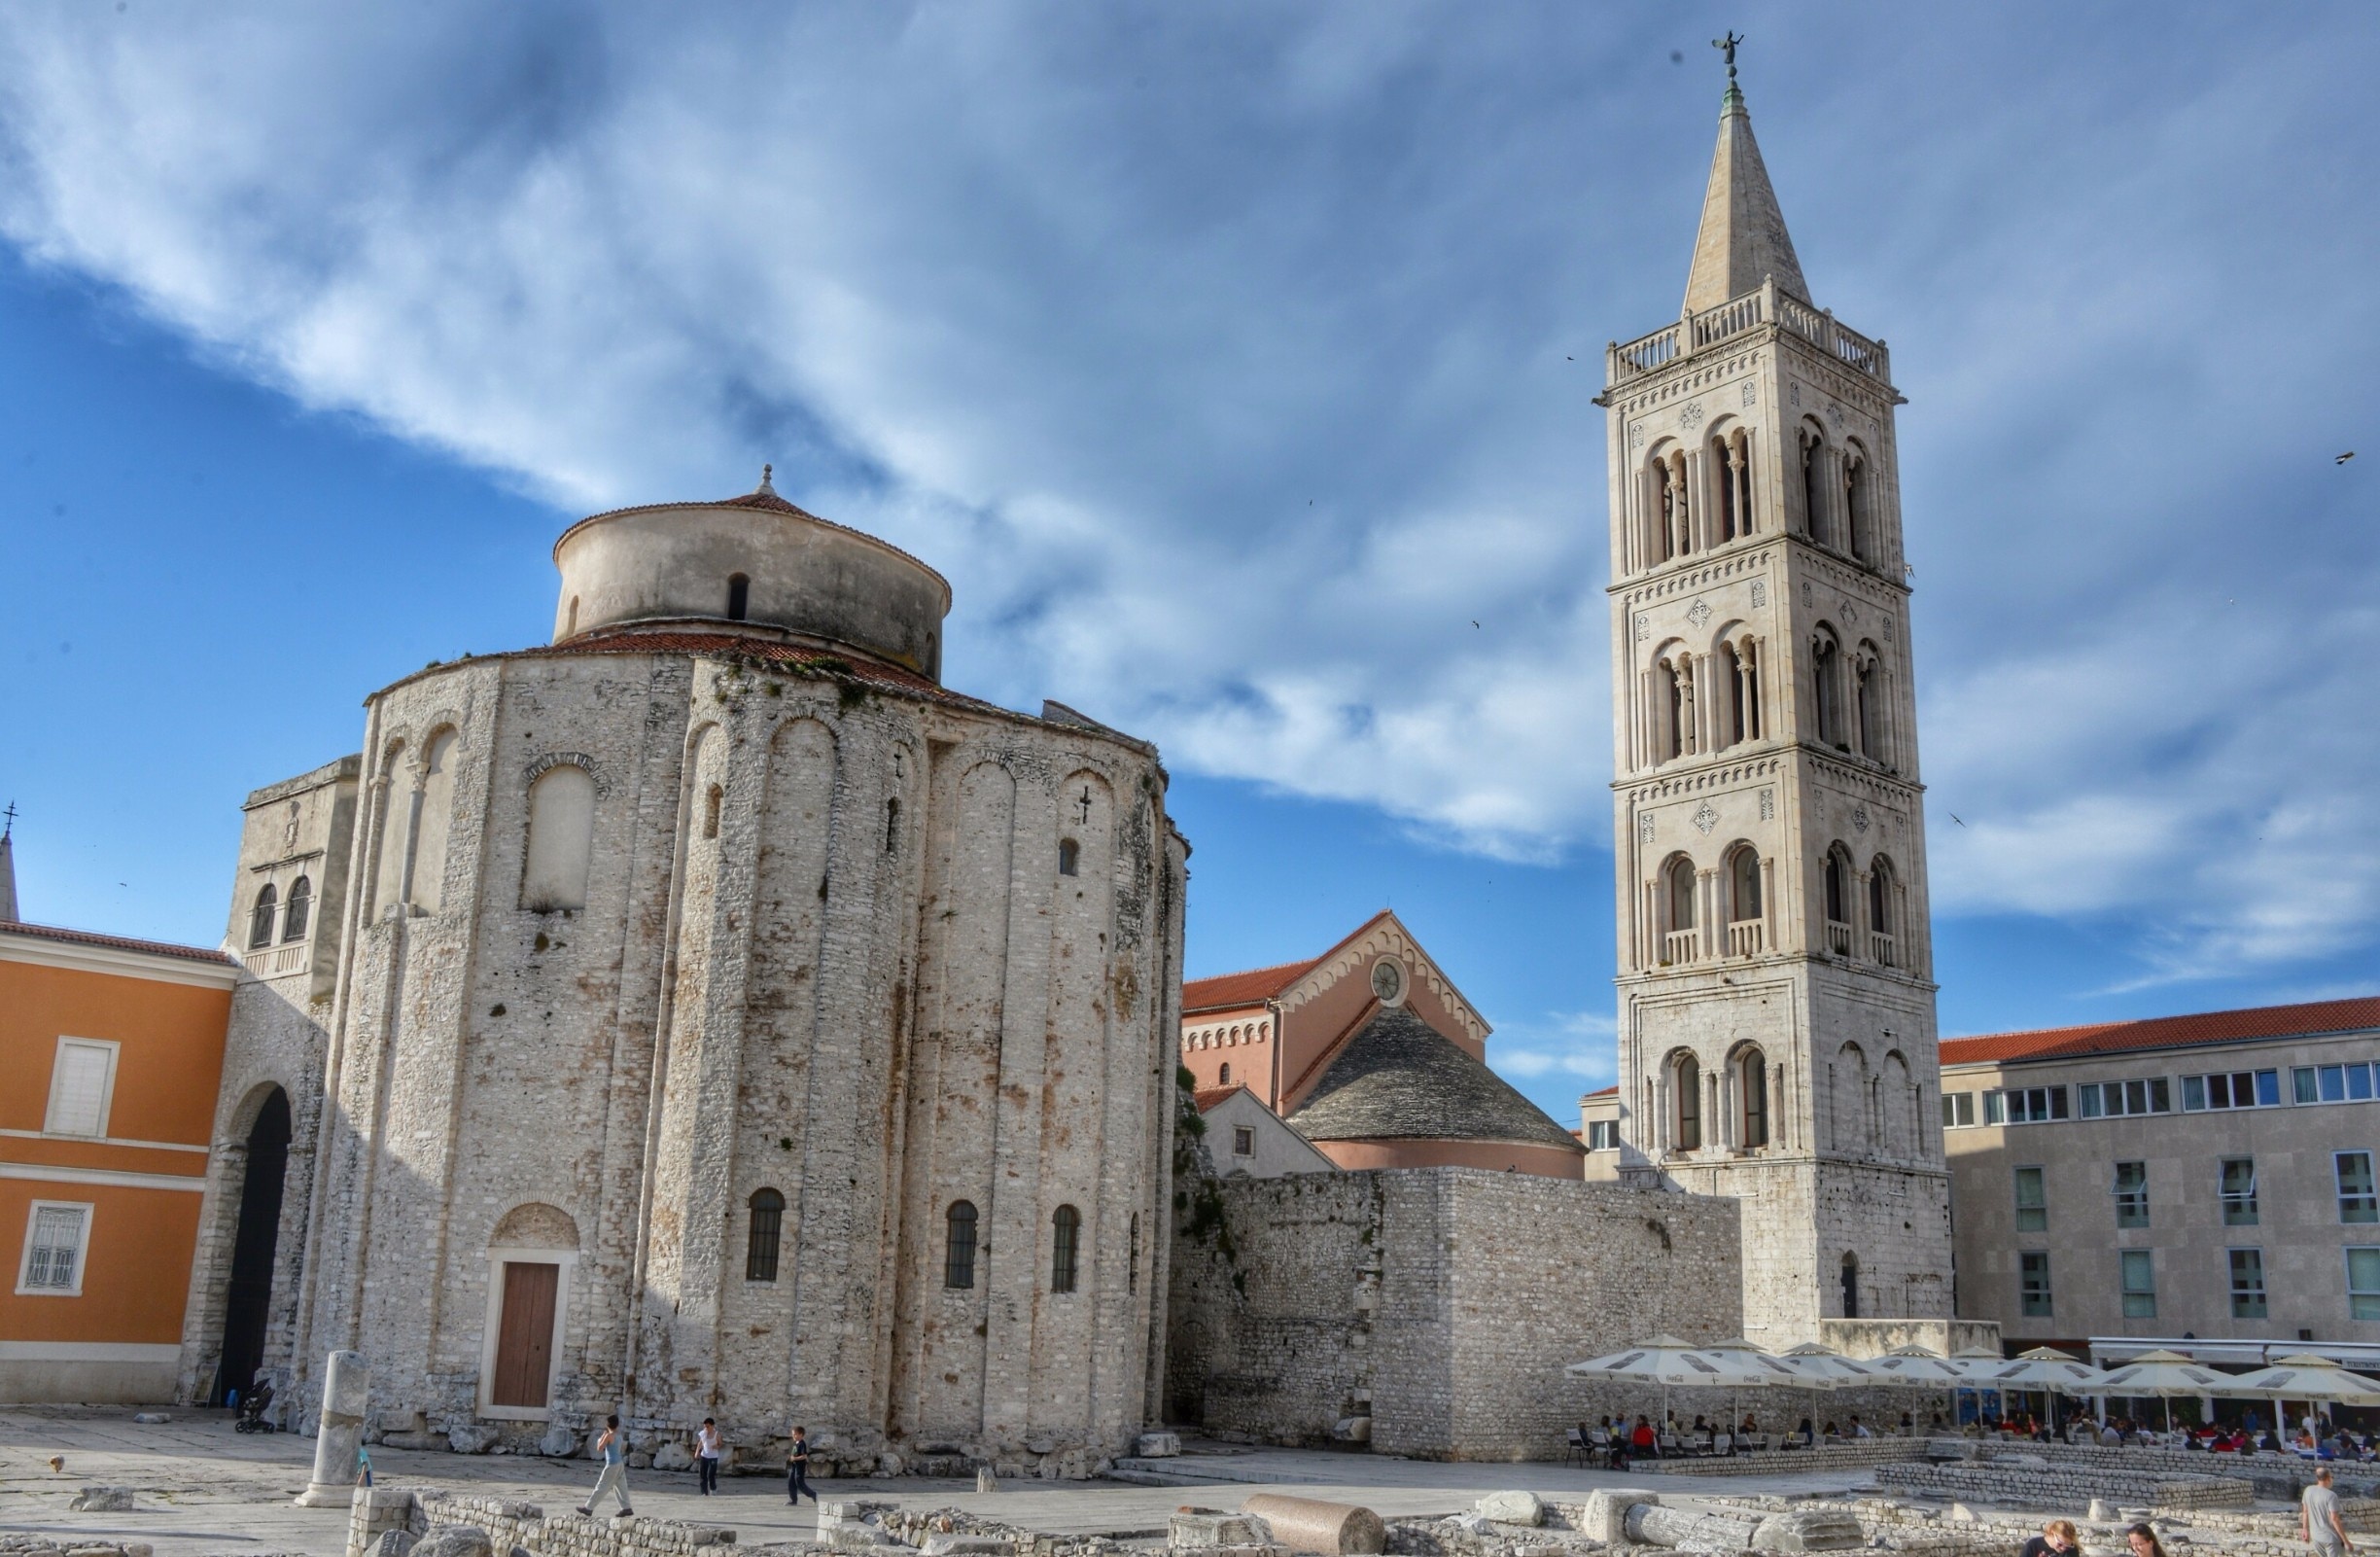 Cerkev Sv. Donata, verjetno največkrat fotografirana stavba v Zadru. Hja, fotogenična je ... :)


#Zadar #Croatia #Dalmatia #Balkan #RoadTrip #Church #Jadran #Sea 